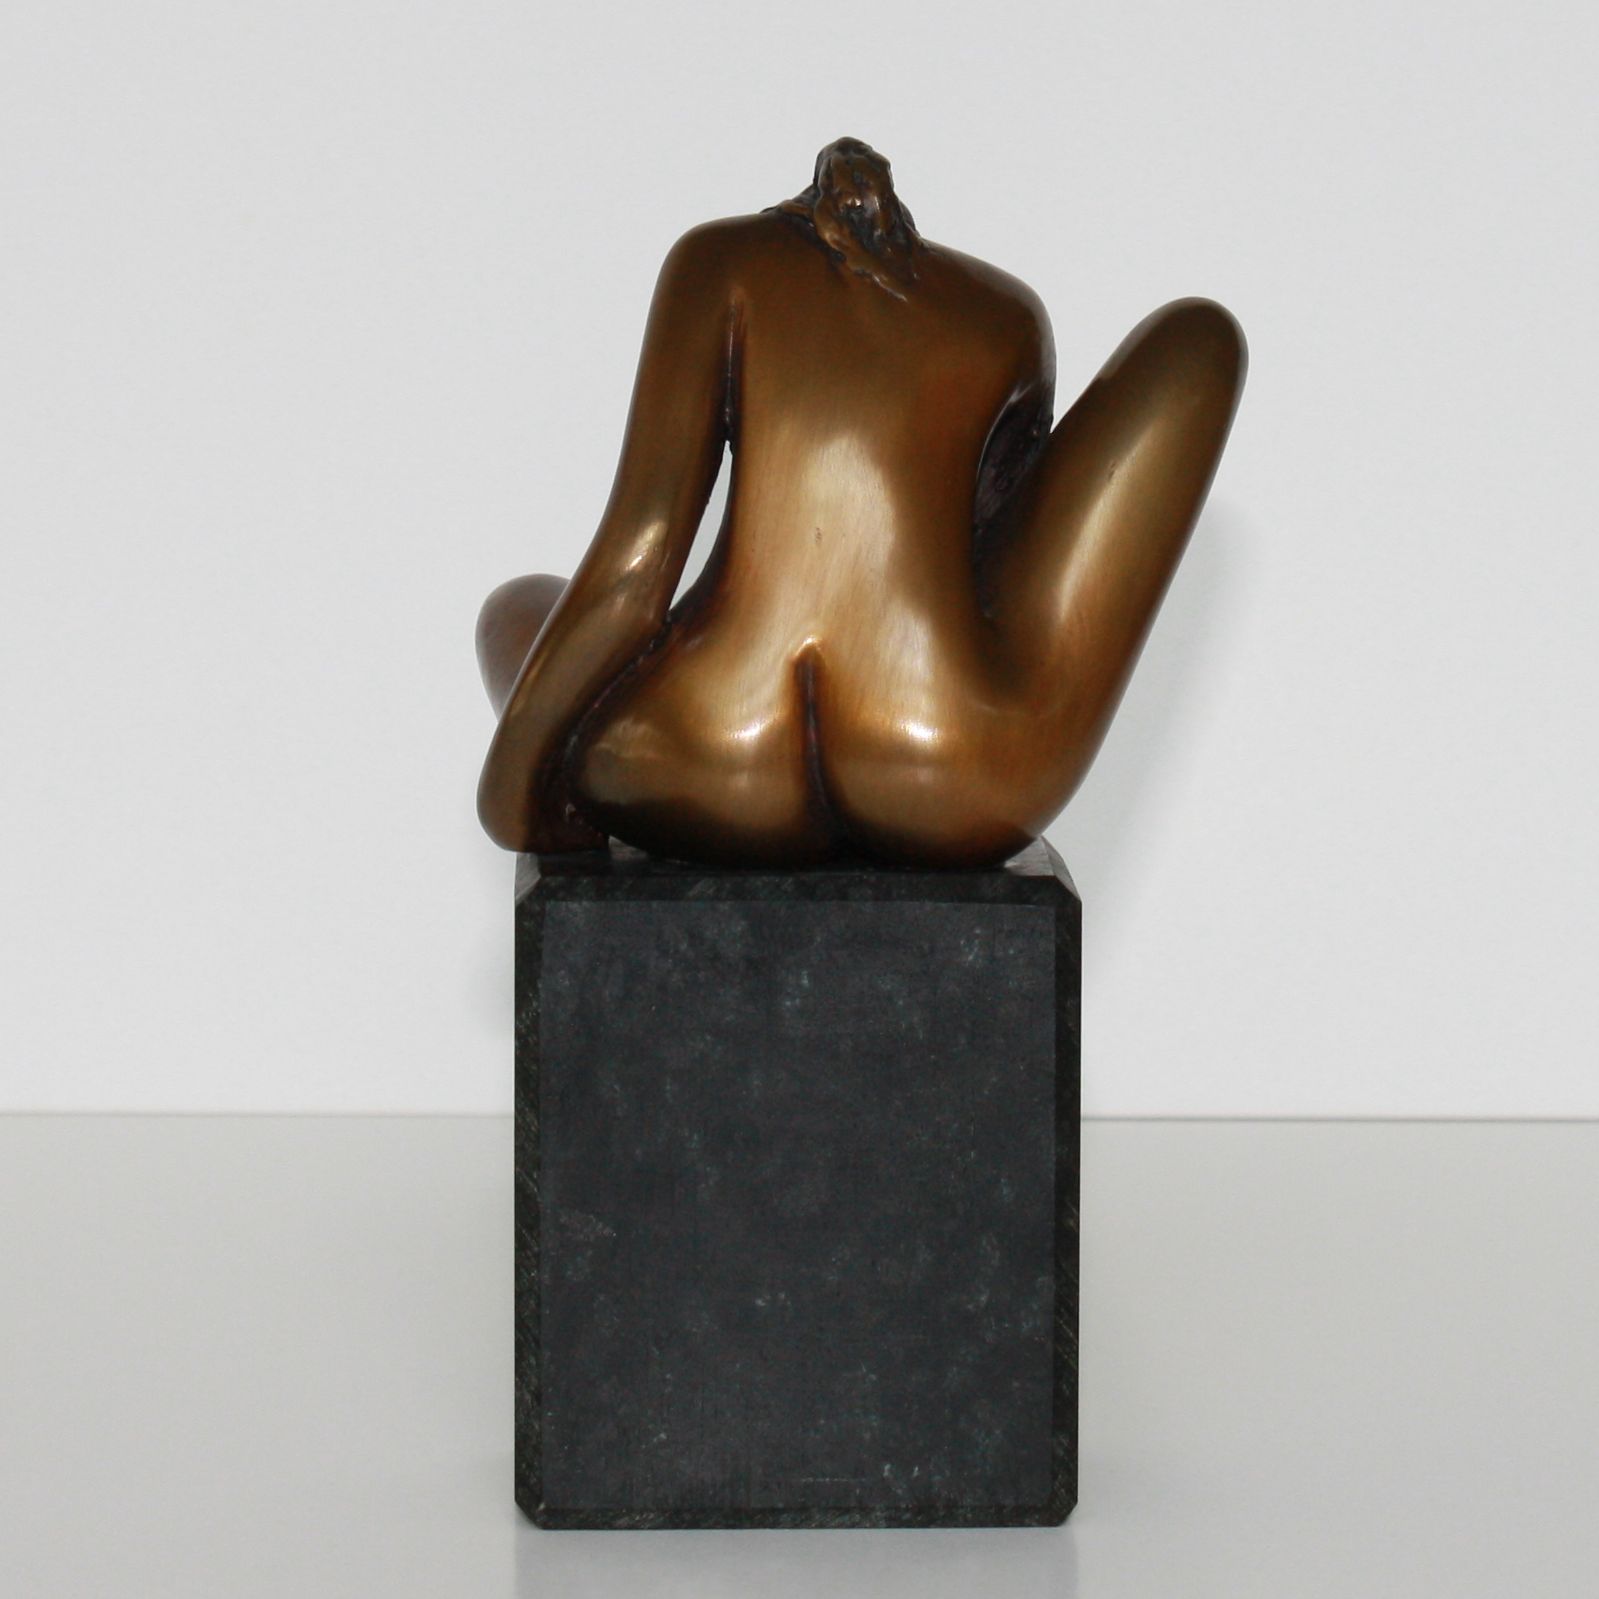 Bronze Skulptur,Frau von hinten, Akt, auf Sockel